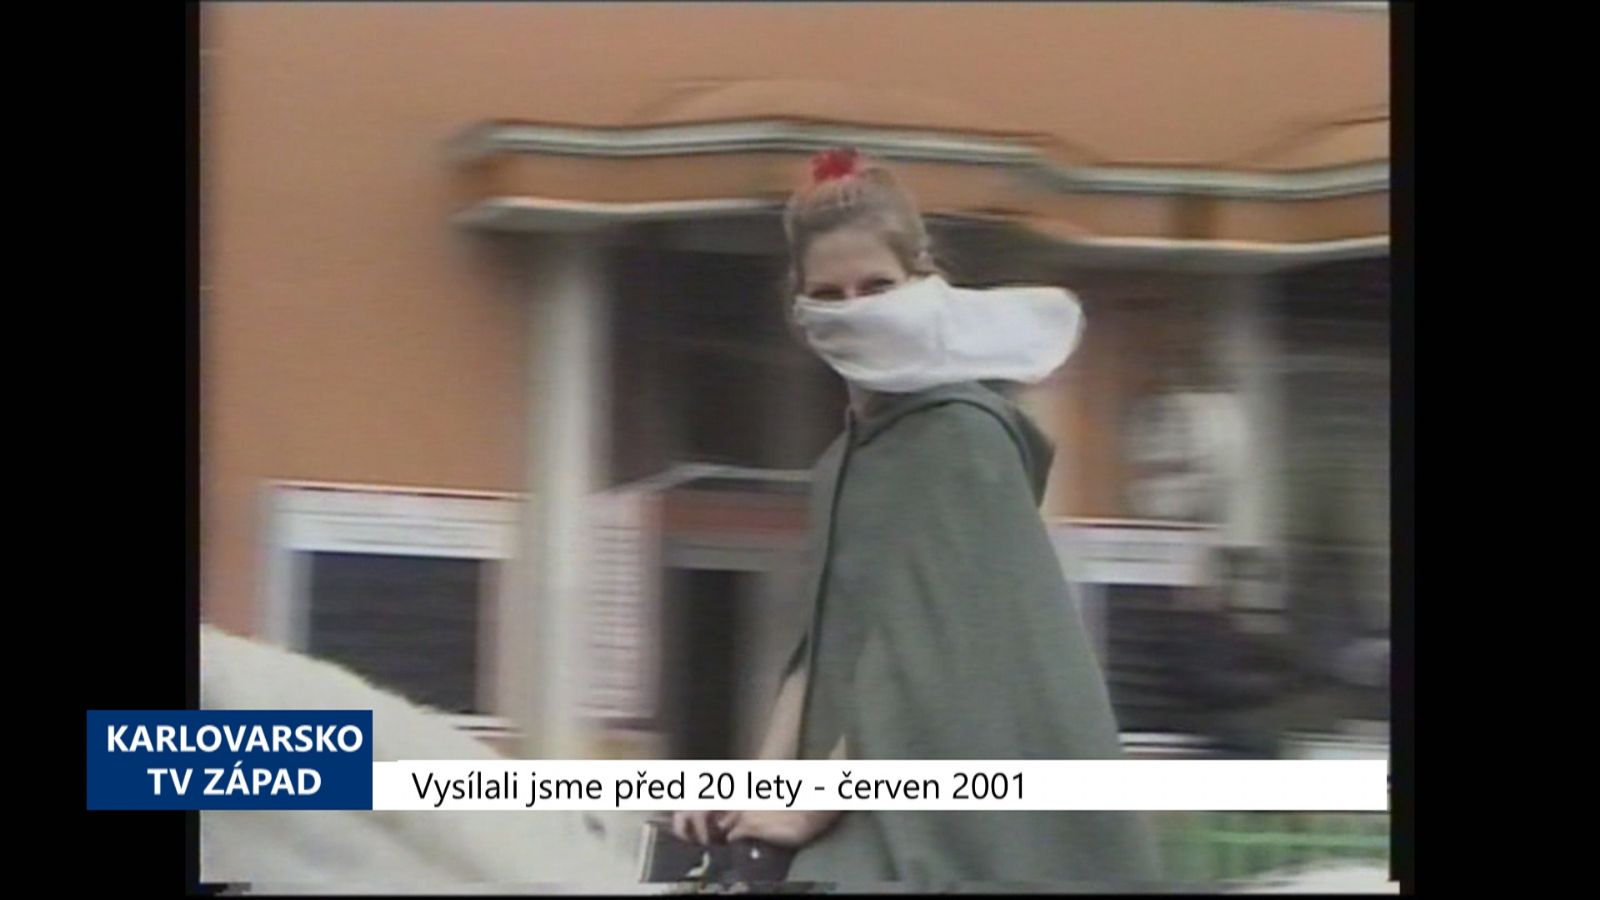 2001 – Cheb: Zahájení turistické sezóny nepřálo počasí (TV Západ)